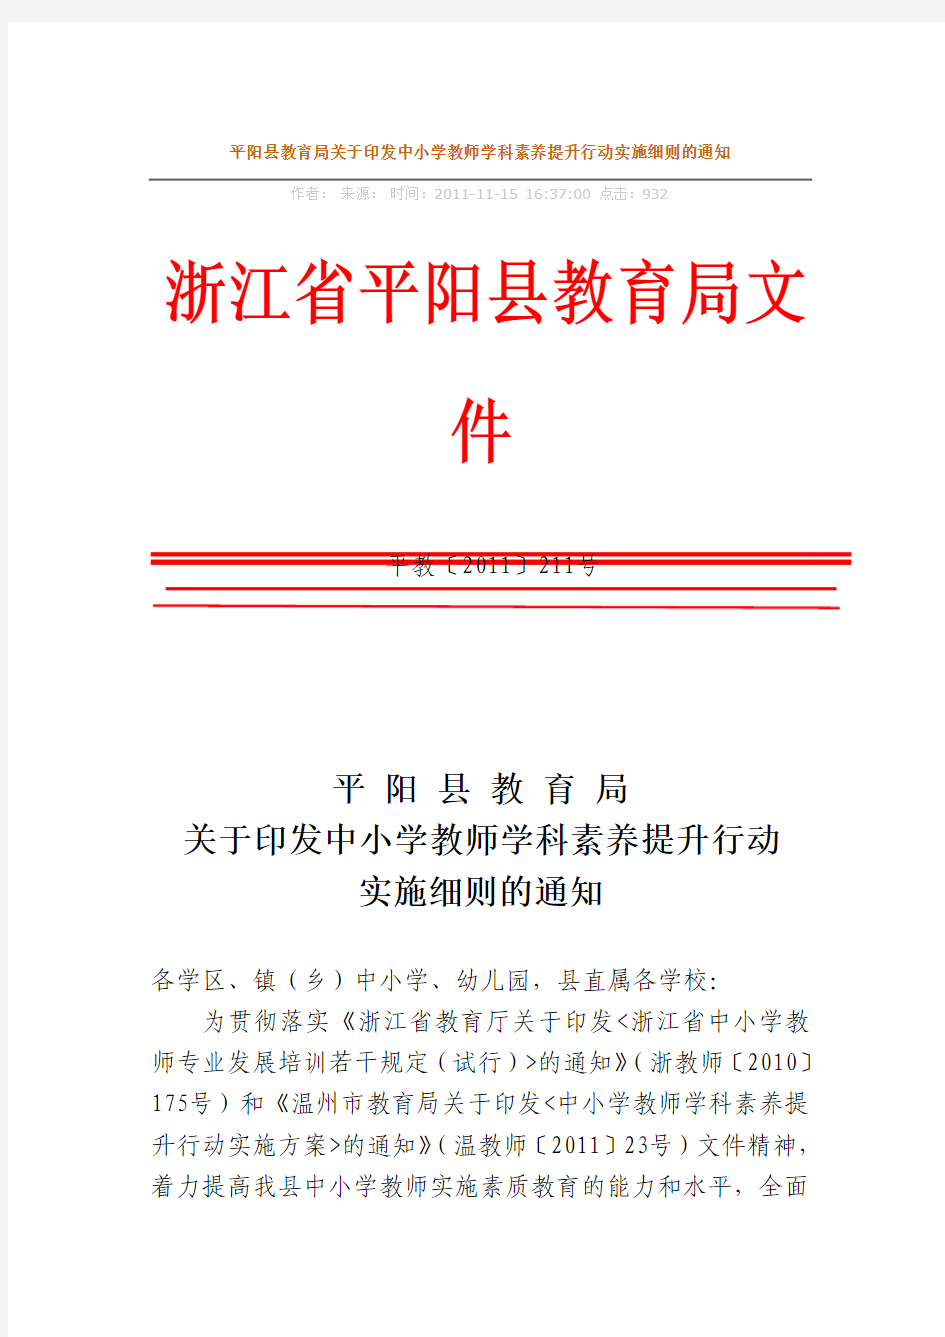 平阳县教育局关于印发中小学教师学科素养提升行动实施细则的通知